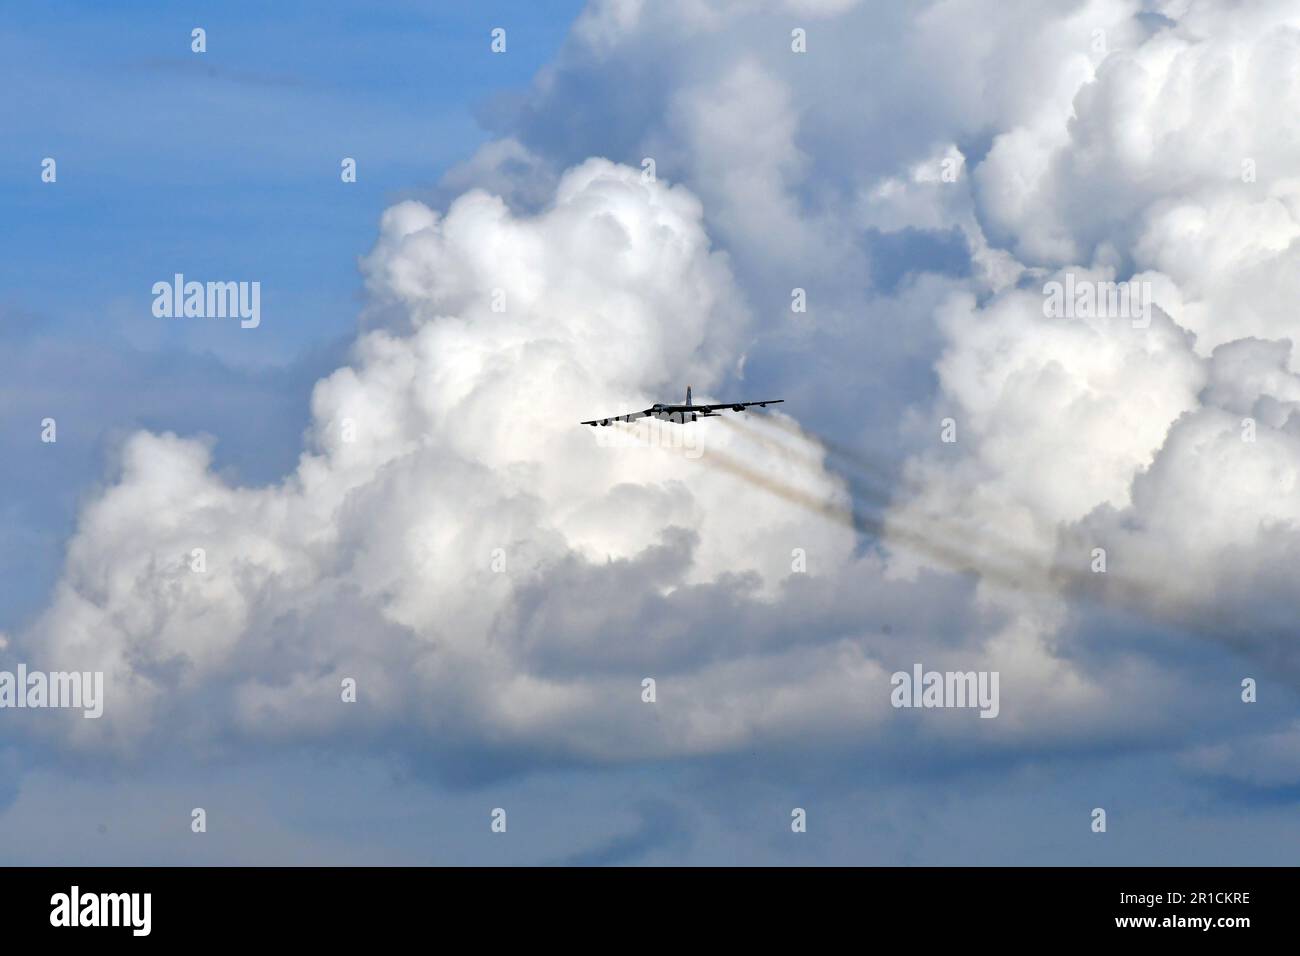 Zeltweg, Autriche - 03 septembre 2022 : spectacle aérien public en Styrie appelé Airpower 22, survol d'un bombardier B-52 Stratoforteresse avec ciel nuageux Banque D'Images